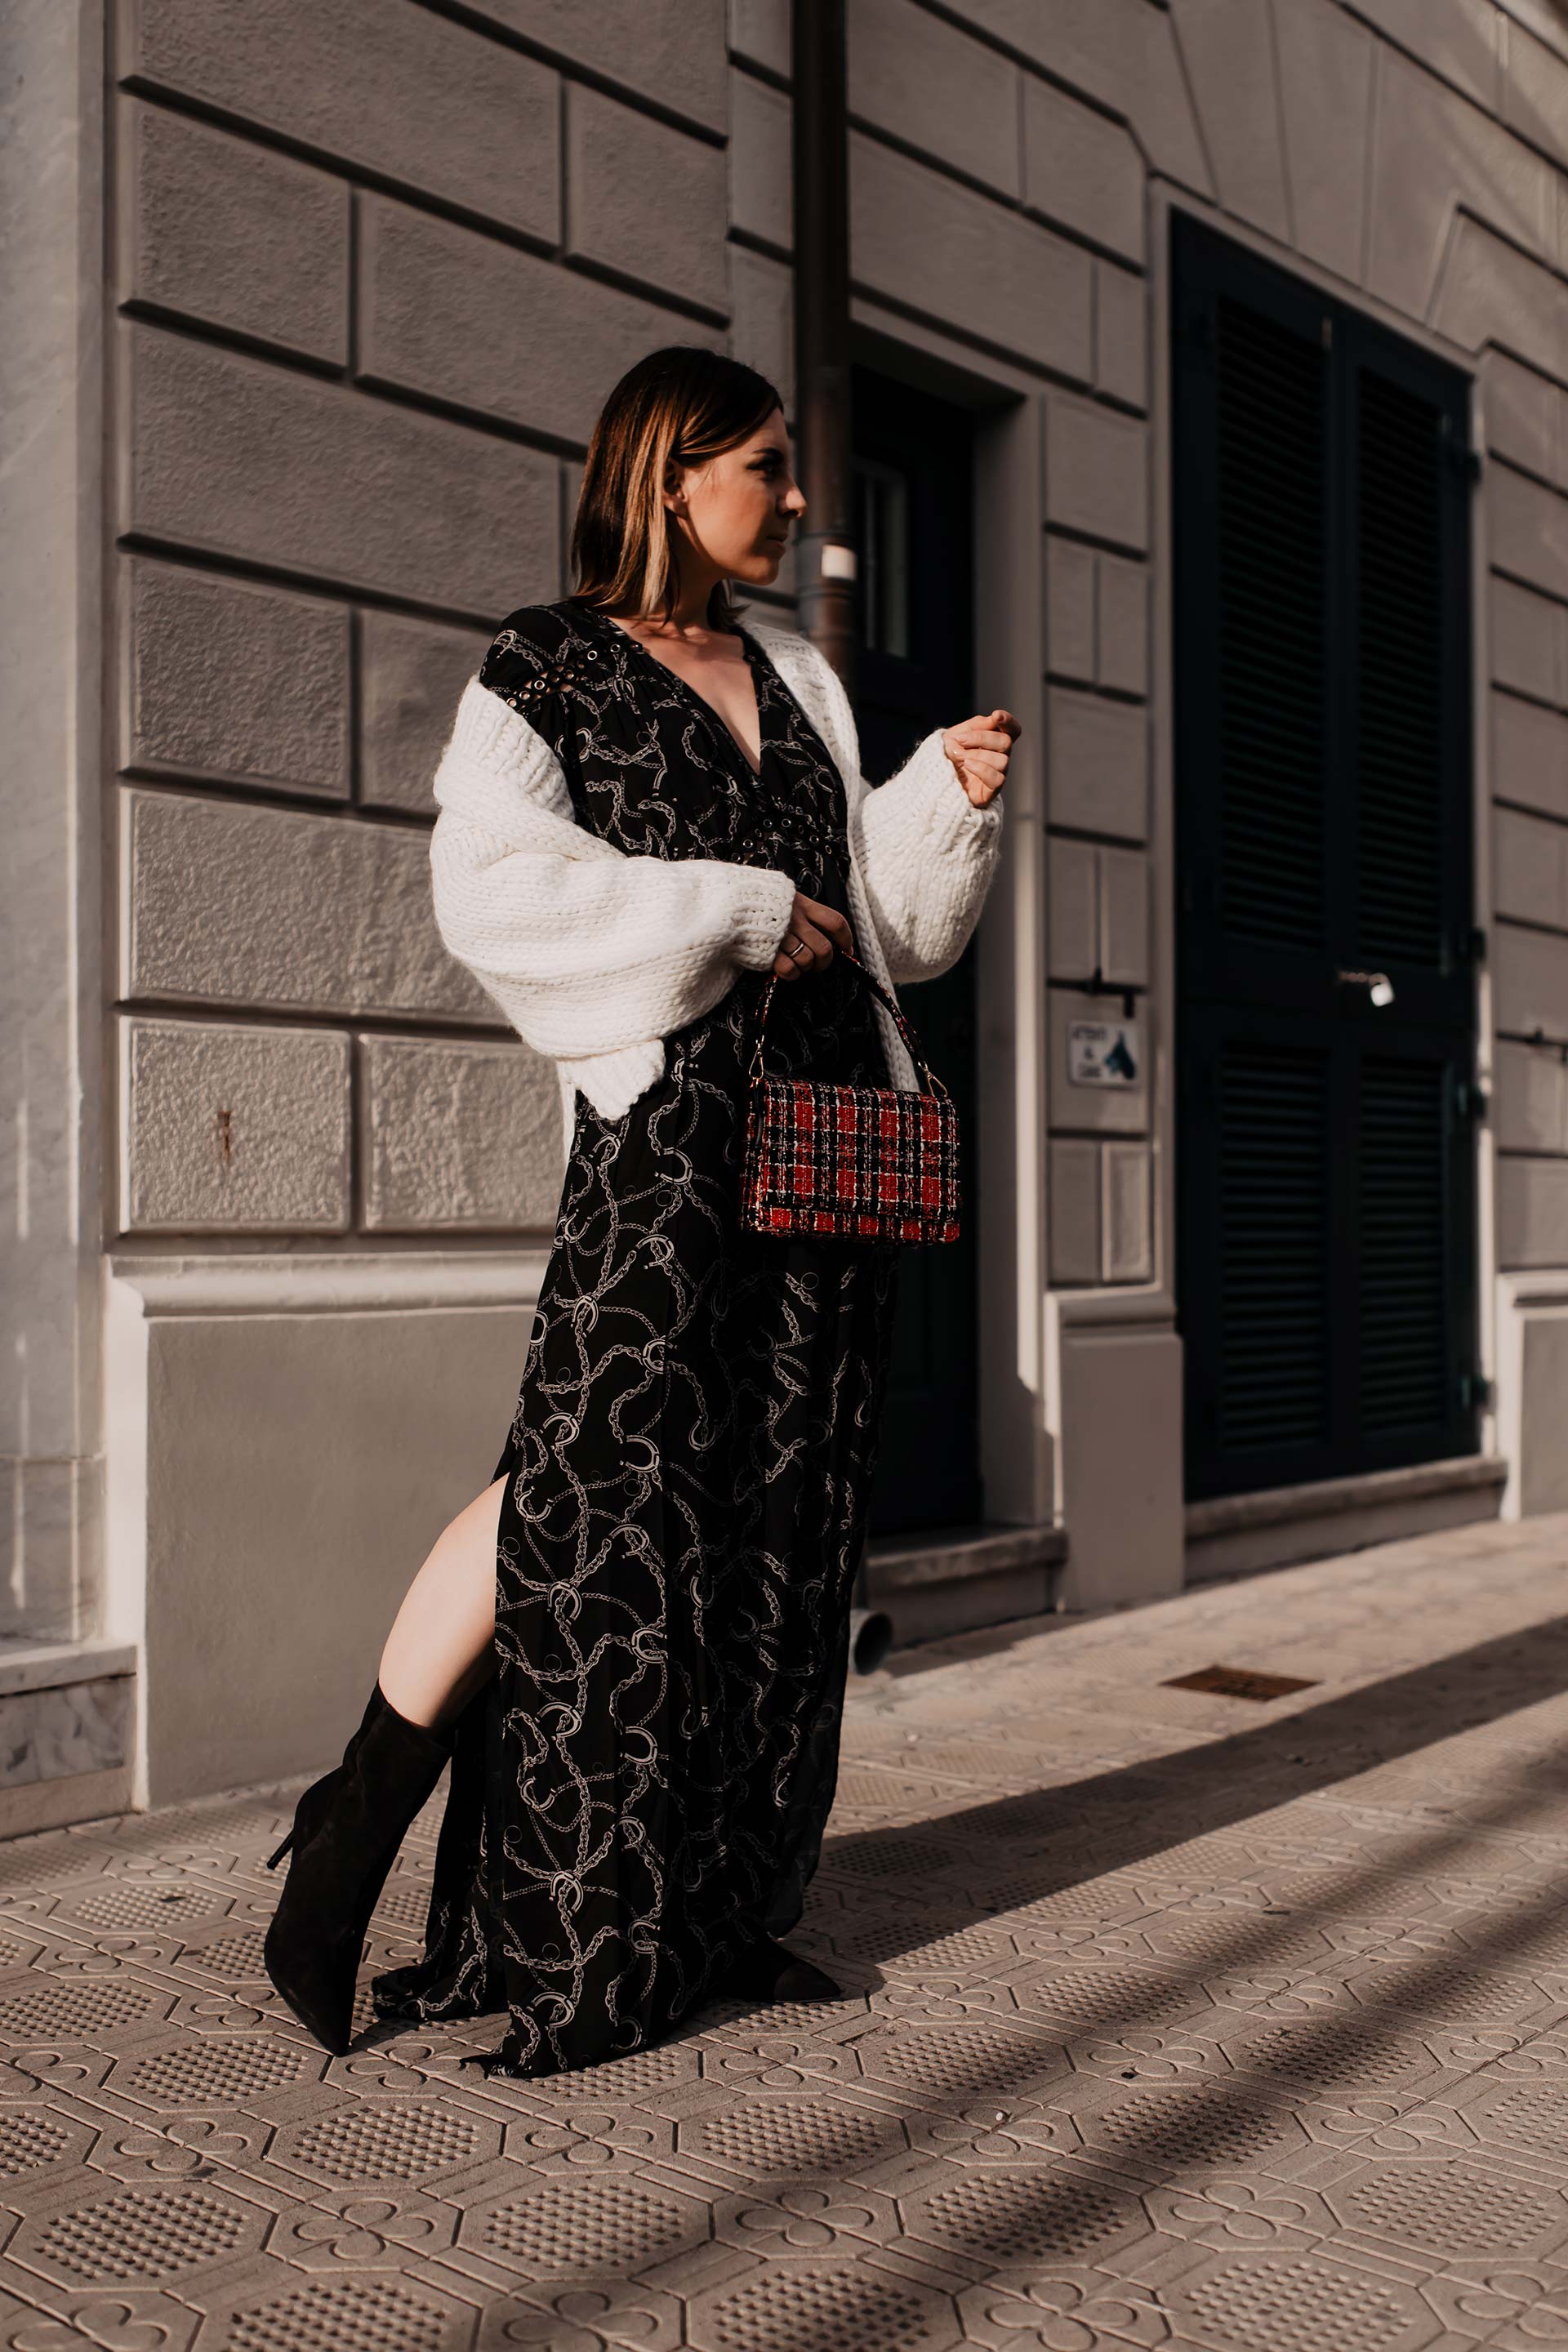 So gut kannst du das Maxikleid im Herbst tragen. Auf meinem Modeblog zeige ich dir heute ein neues Herbst Outfit sowie passende Styling-Tipps für Maxikleider in der kühlen Jahreszeit. www.whoismocca.com #maxikleid #herbstoutfit #modetrends